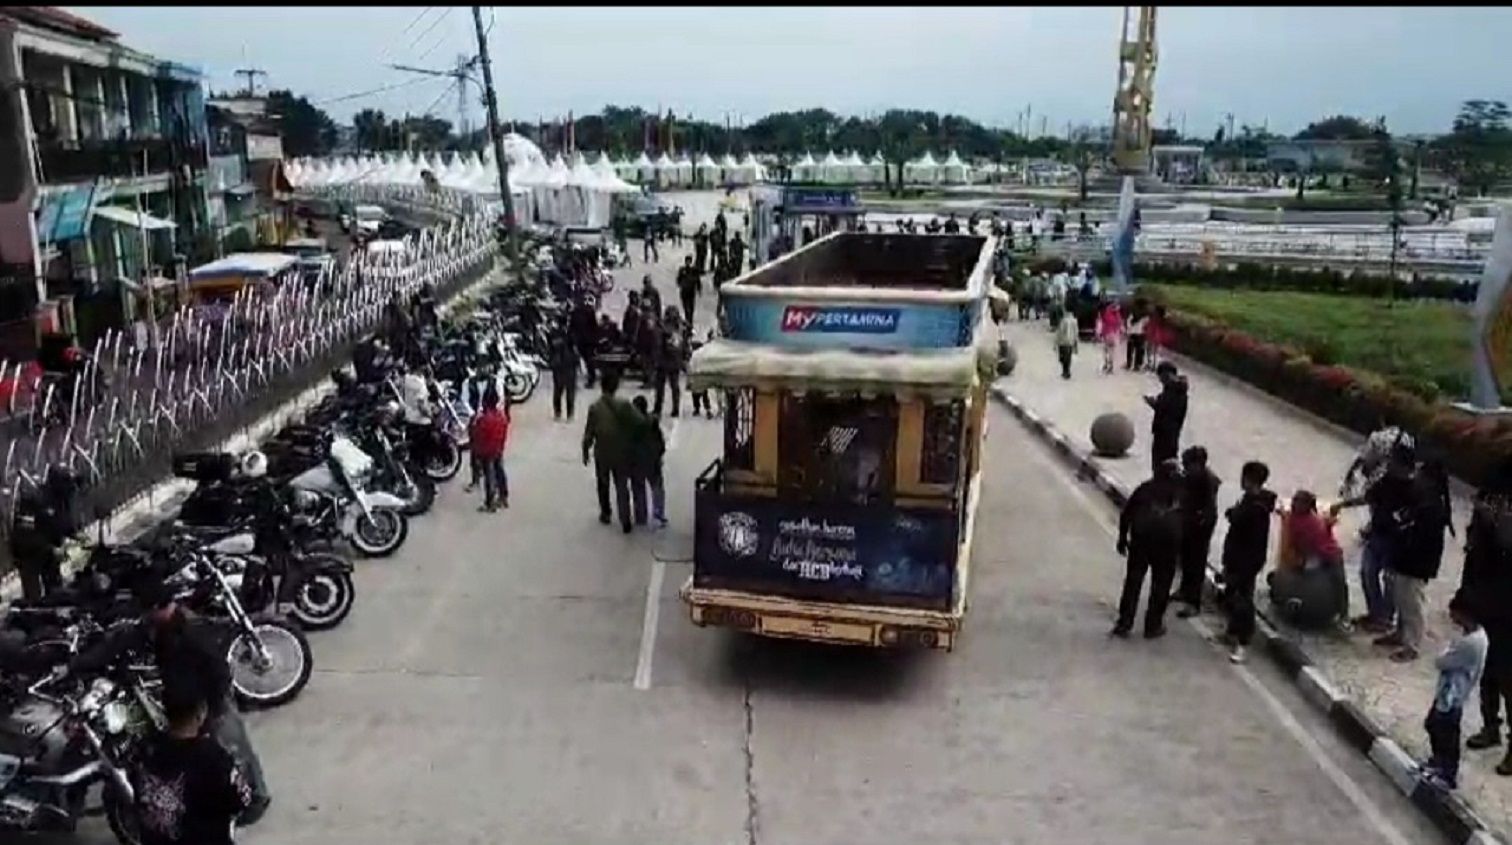 Anak yatim diajak berbagi pengalaman menaiki dua unit kendaraan Bandros (Bandung Tour on The Bus) ke Masjid Raya Al-  Jabbar, diiringi konvoi anggota HCB yang mengendarai unit Harley-Davidson berbagai tipe dan model.*/   